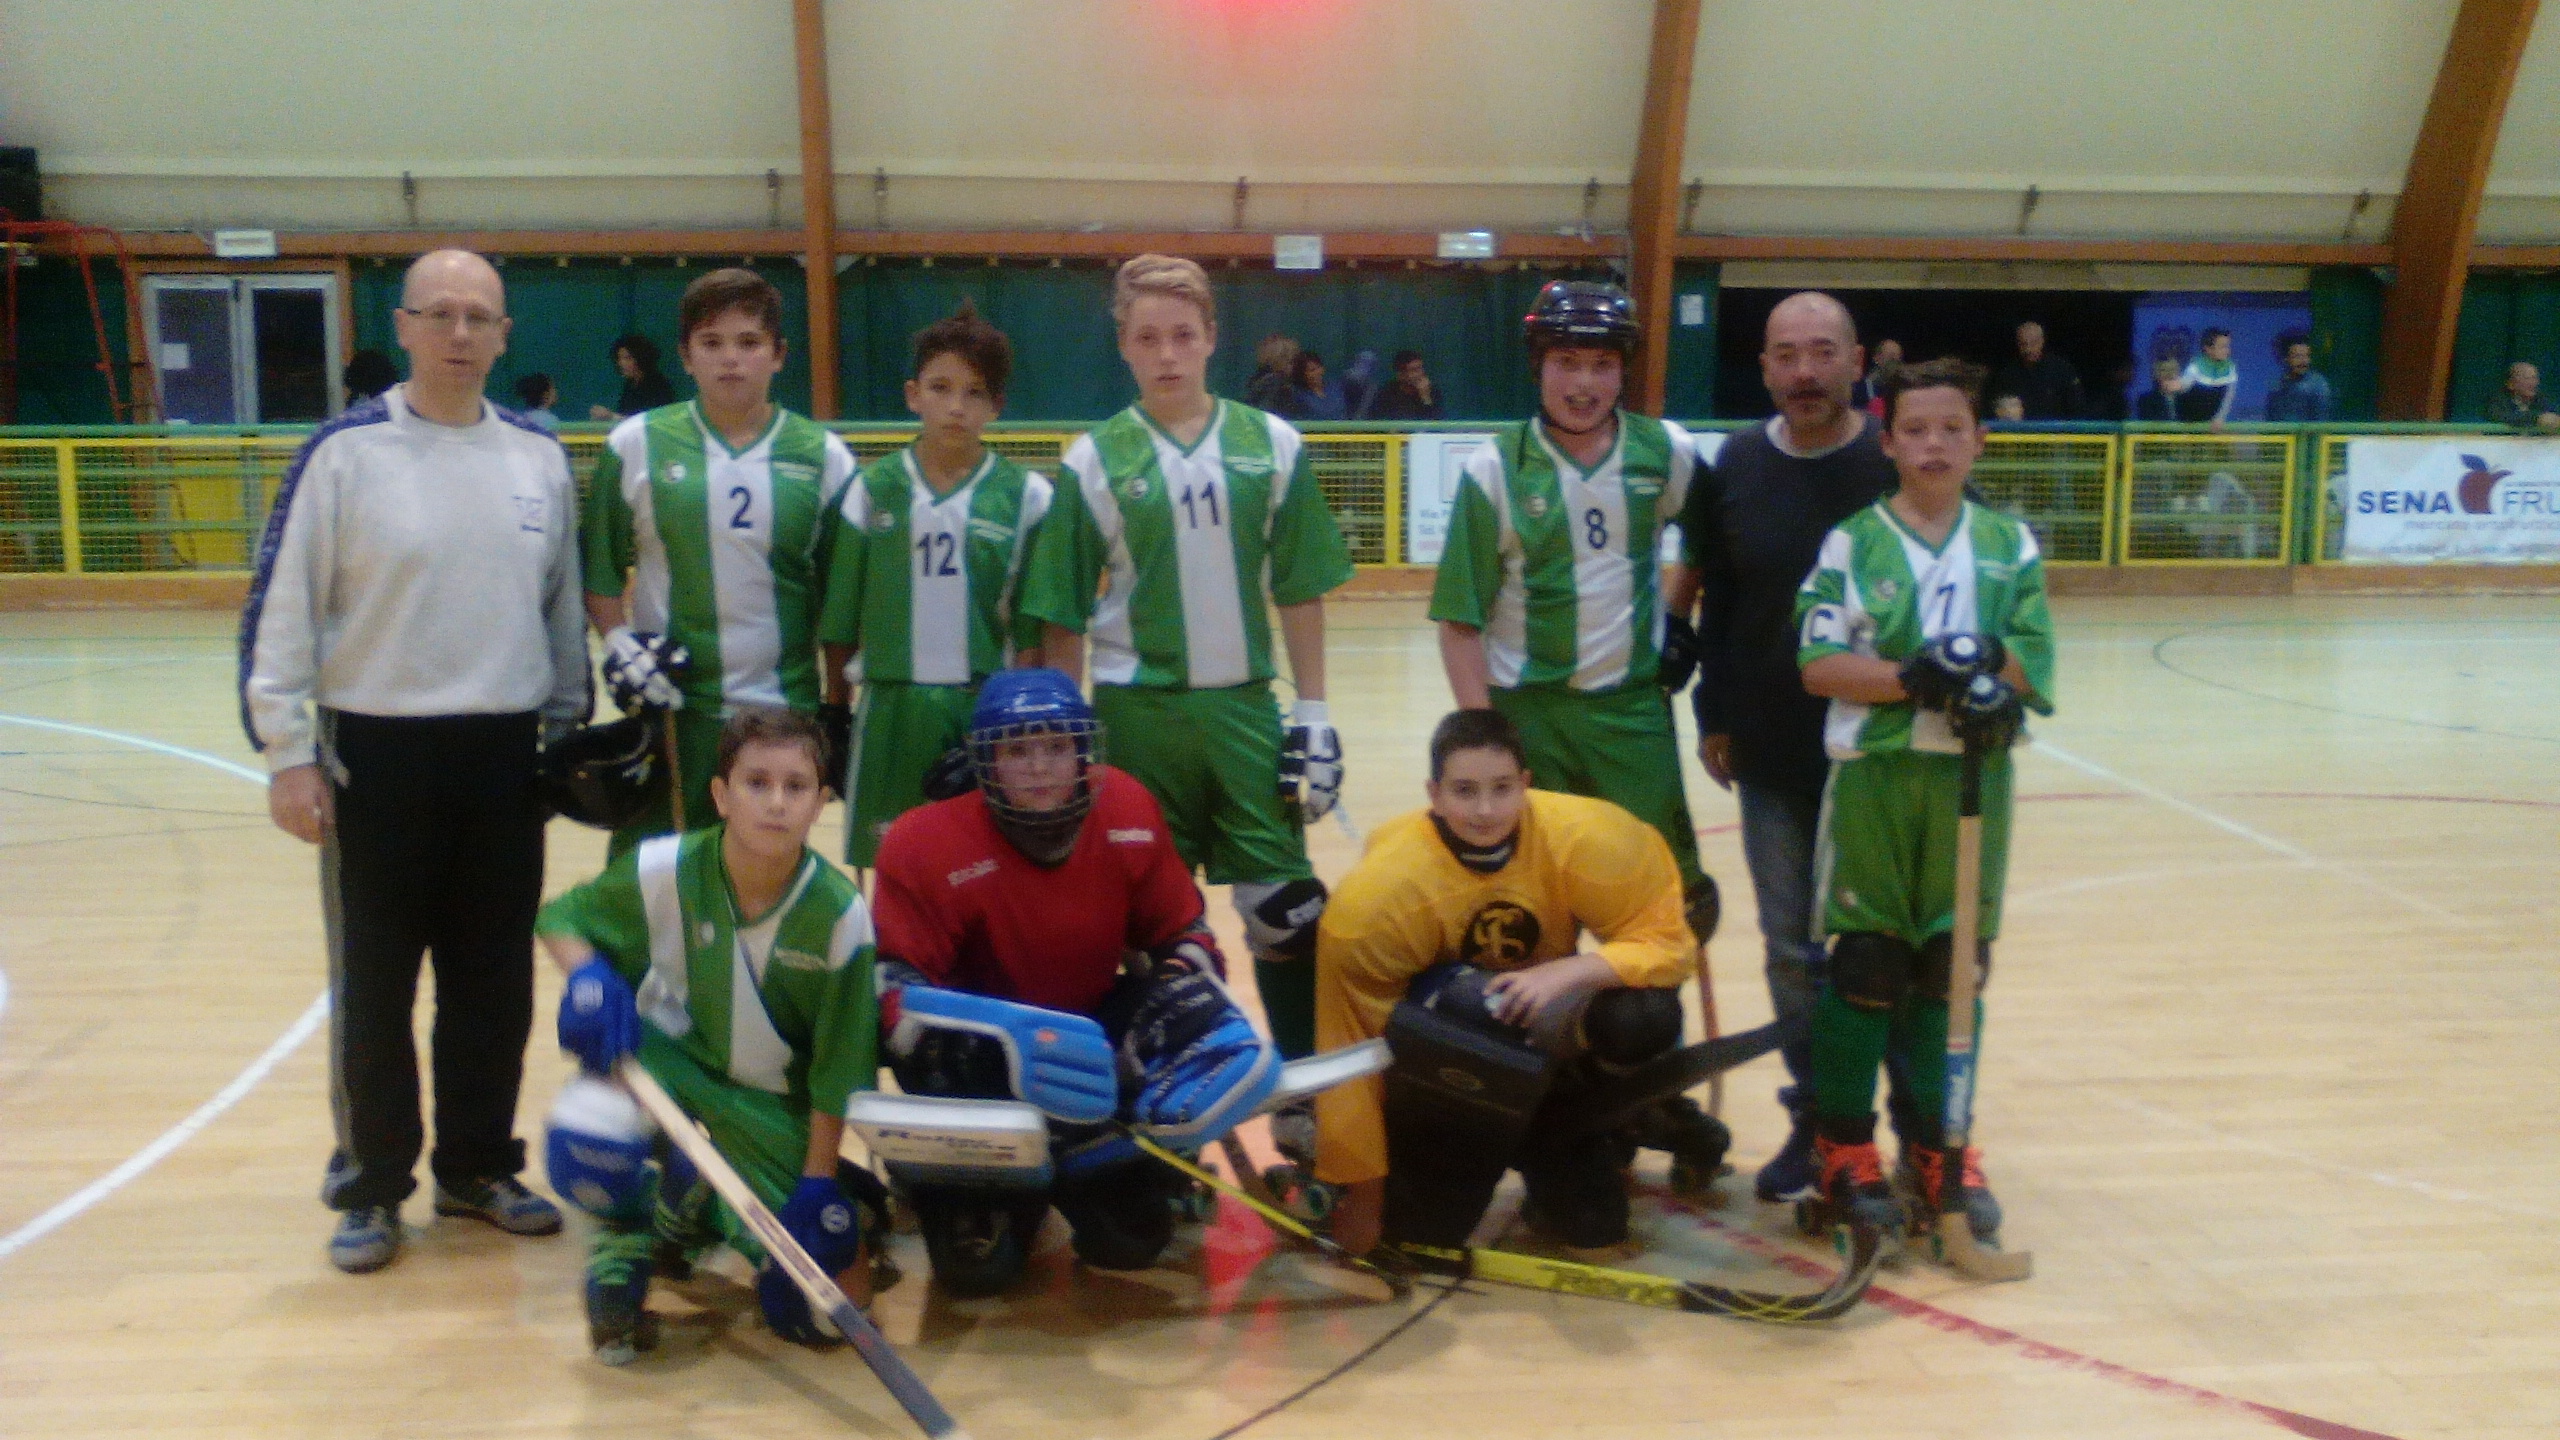 HockeySiena: al via i campionati giovanili